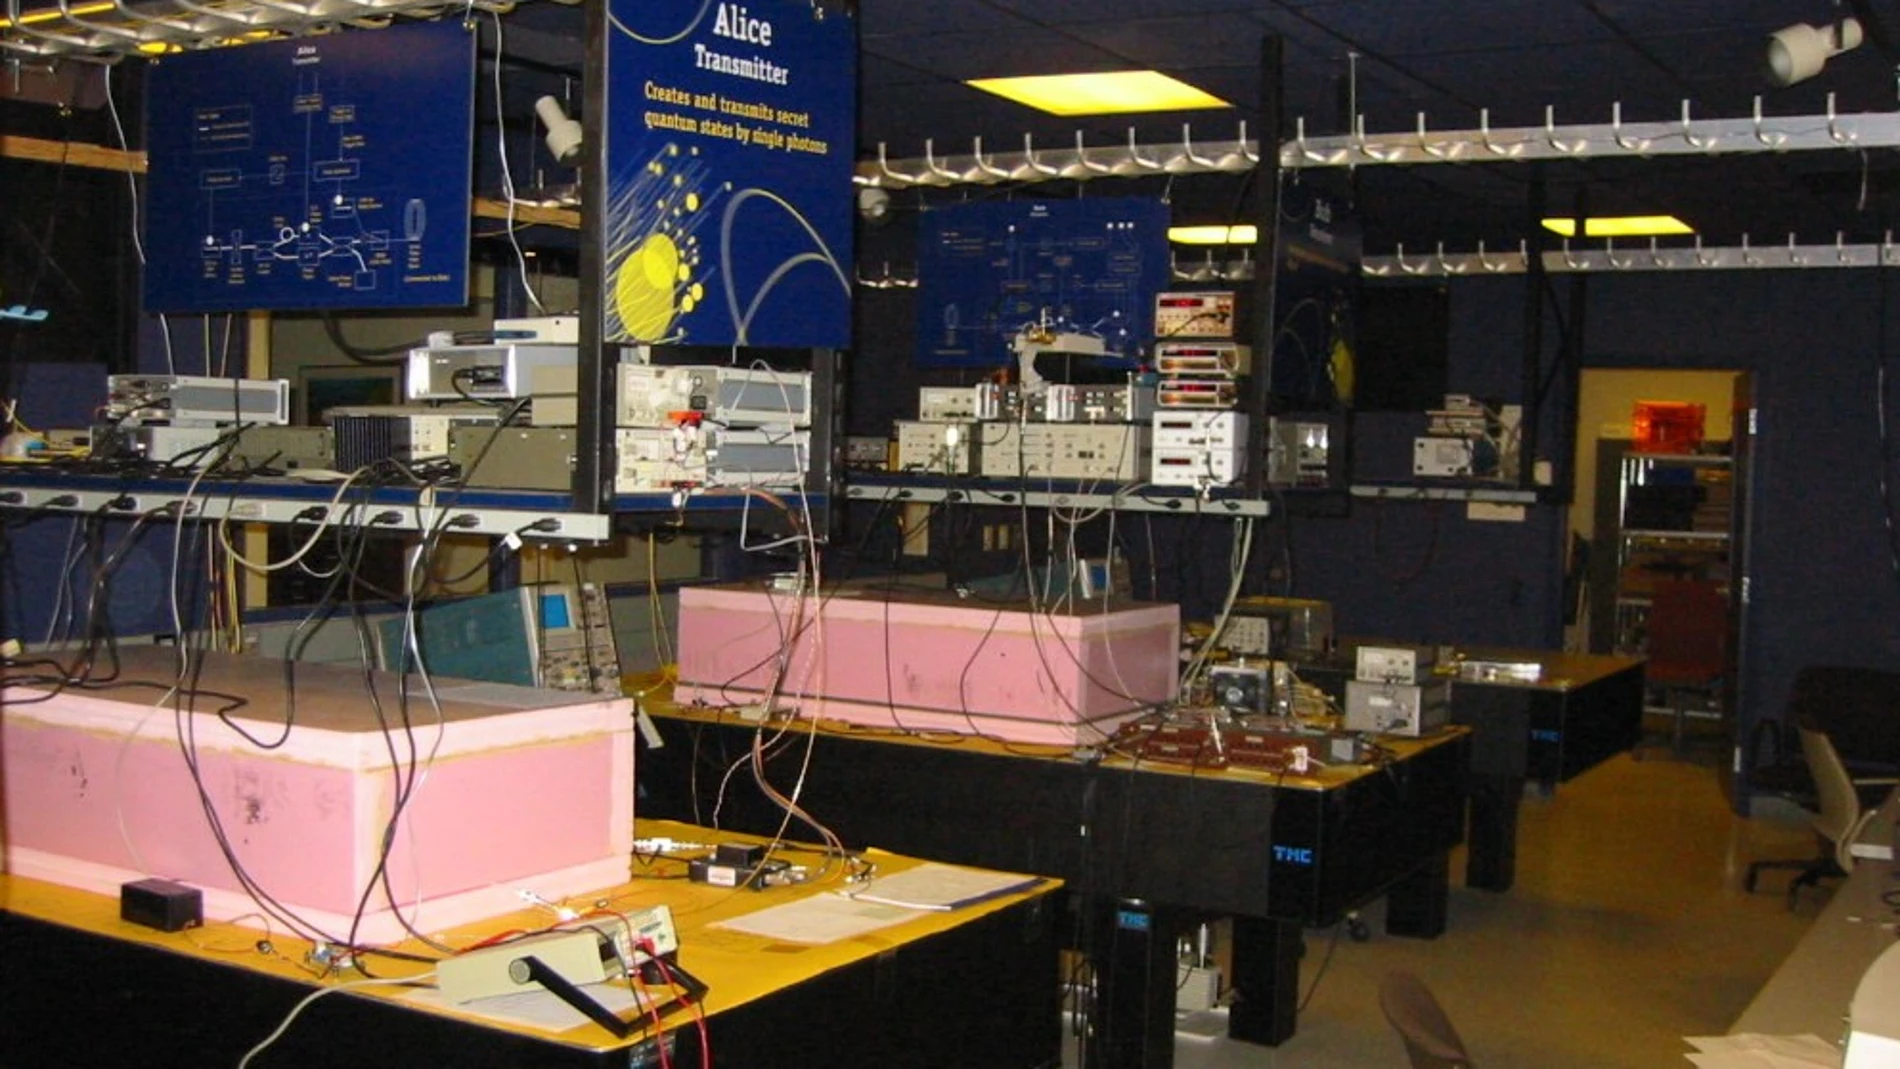 Fotografía de la Red DARPA, la primera red capaz de hacer distribución cuántica de claves. Conectaba las ciudades de Boston y Cambridge en Massachusetts, y estuvo en funcionamiento desde 2003 hasta 2007.